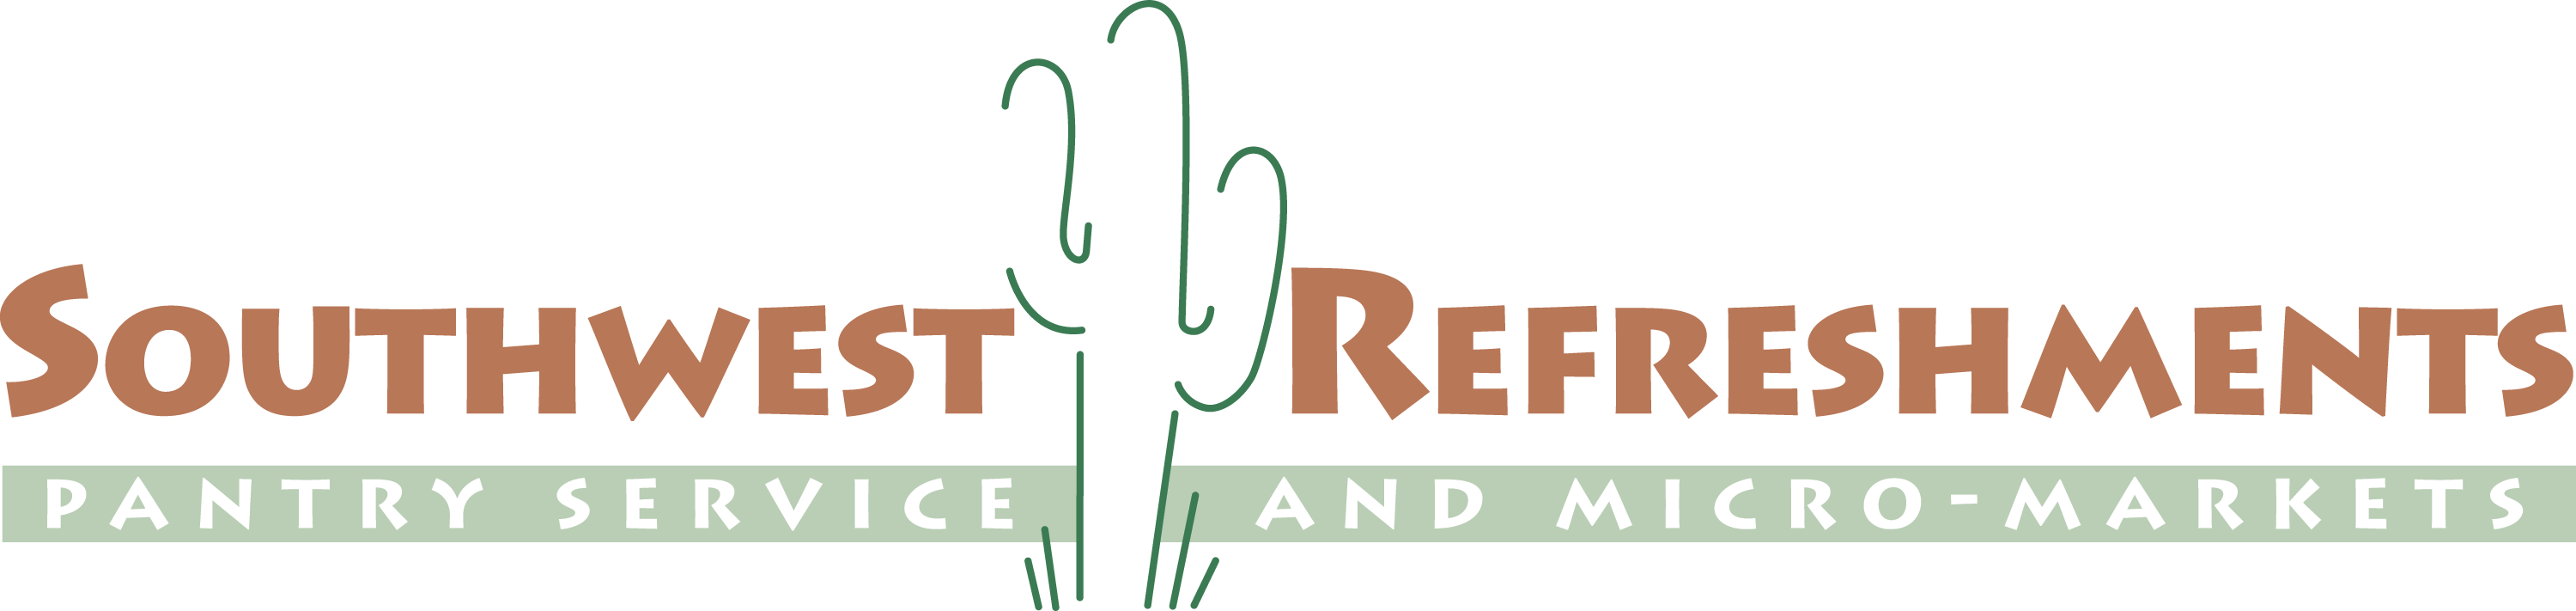 Southwest Refreshments logo